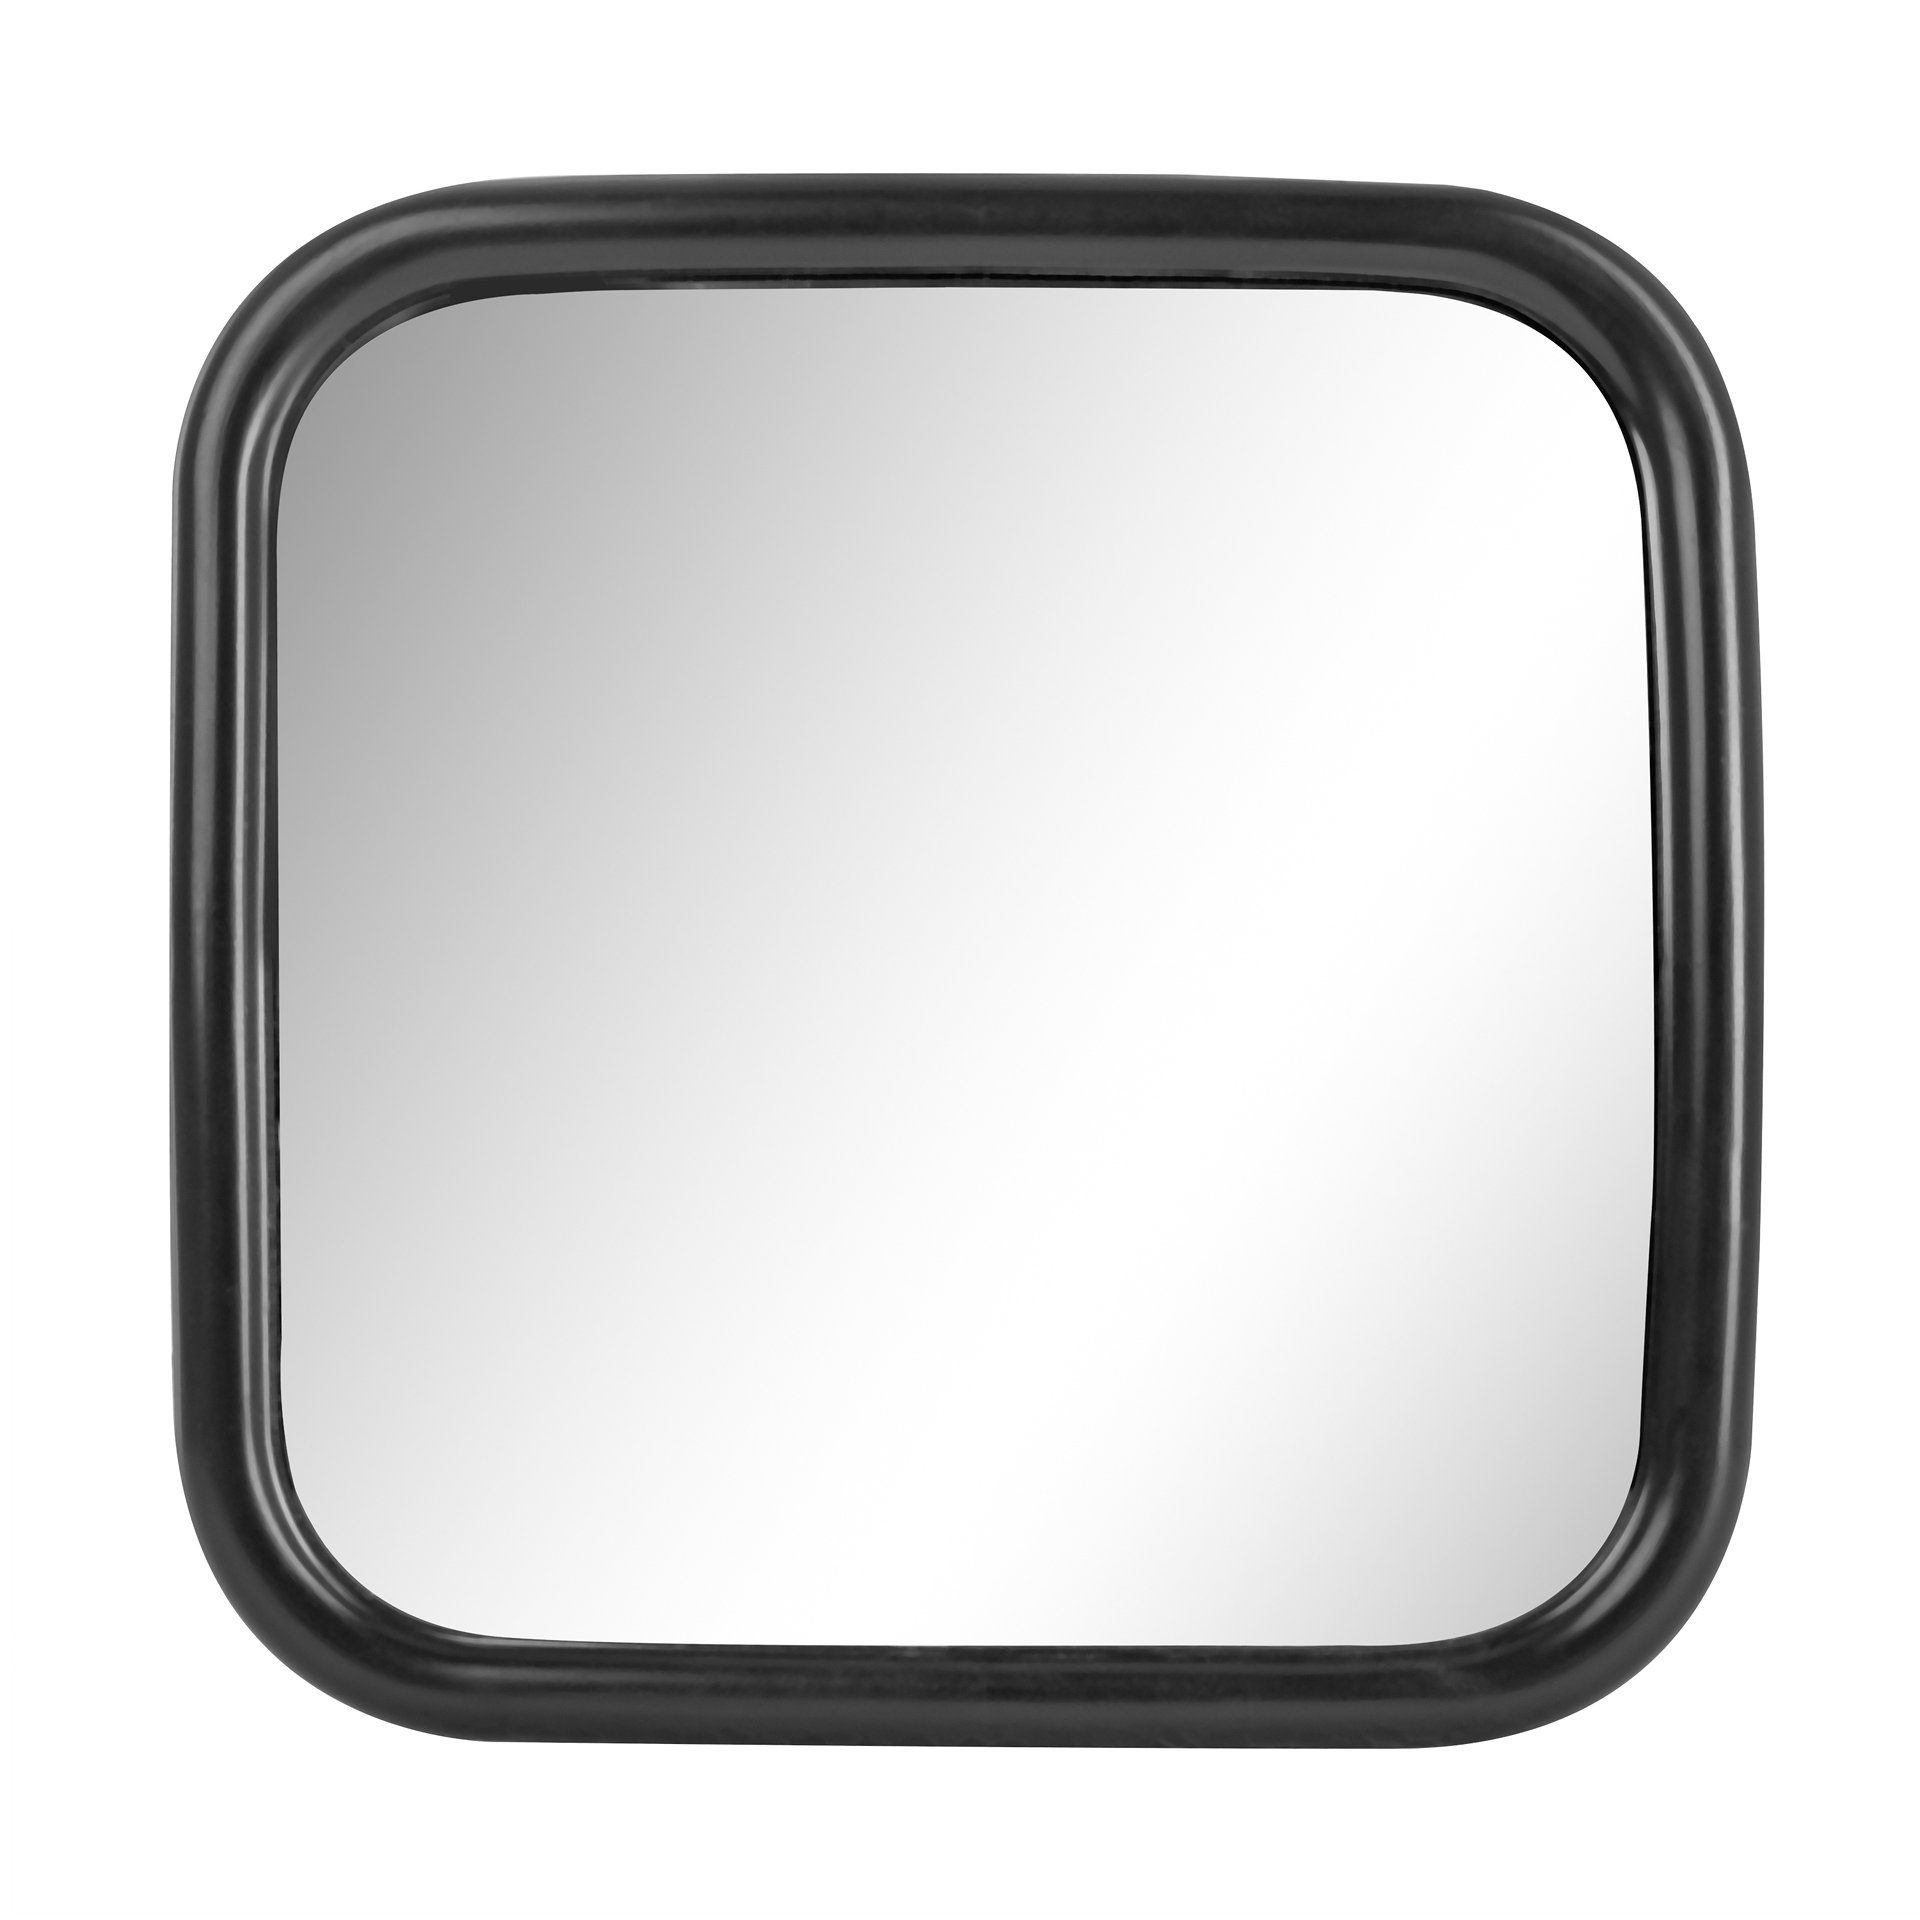 StickandShine Spiegel 1x LKW, Transporter oder Bus Spiegel universal in verschiedenen Größe mit flexibler Halterung